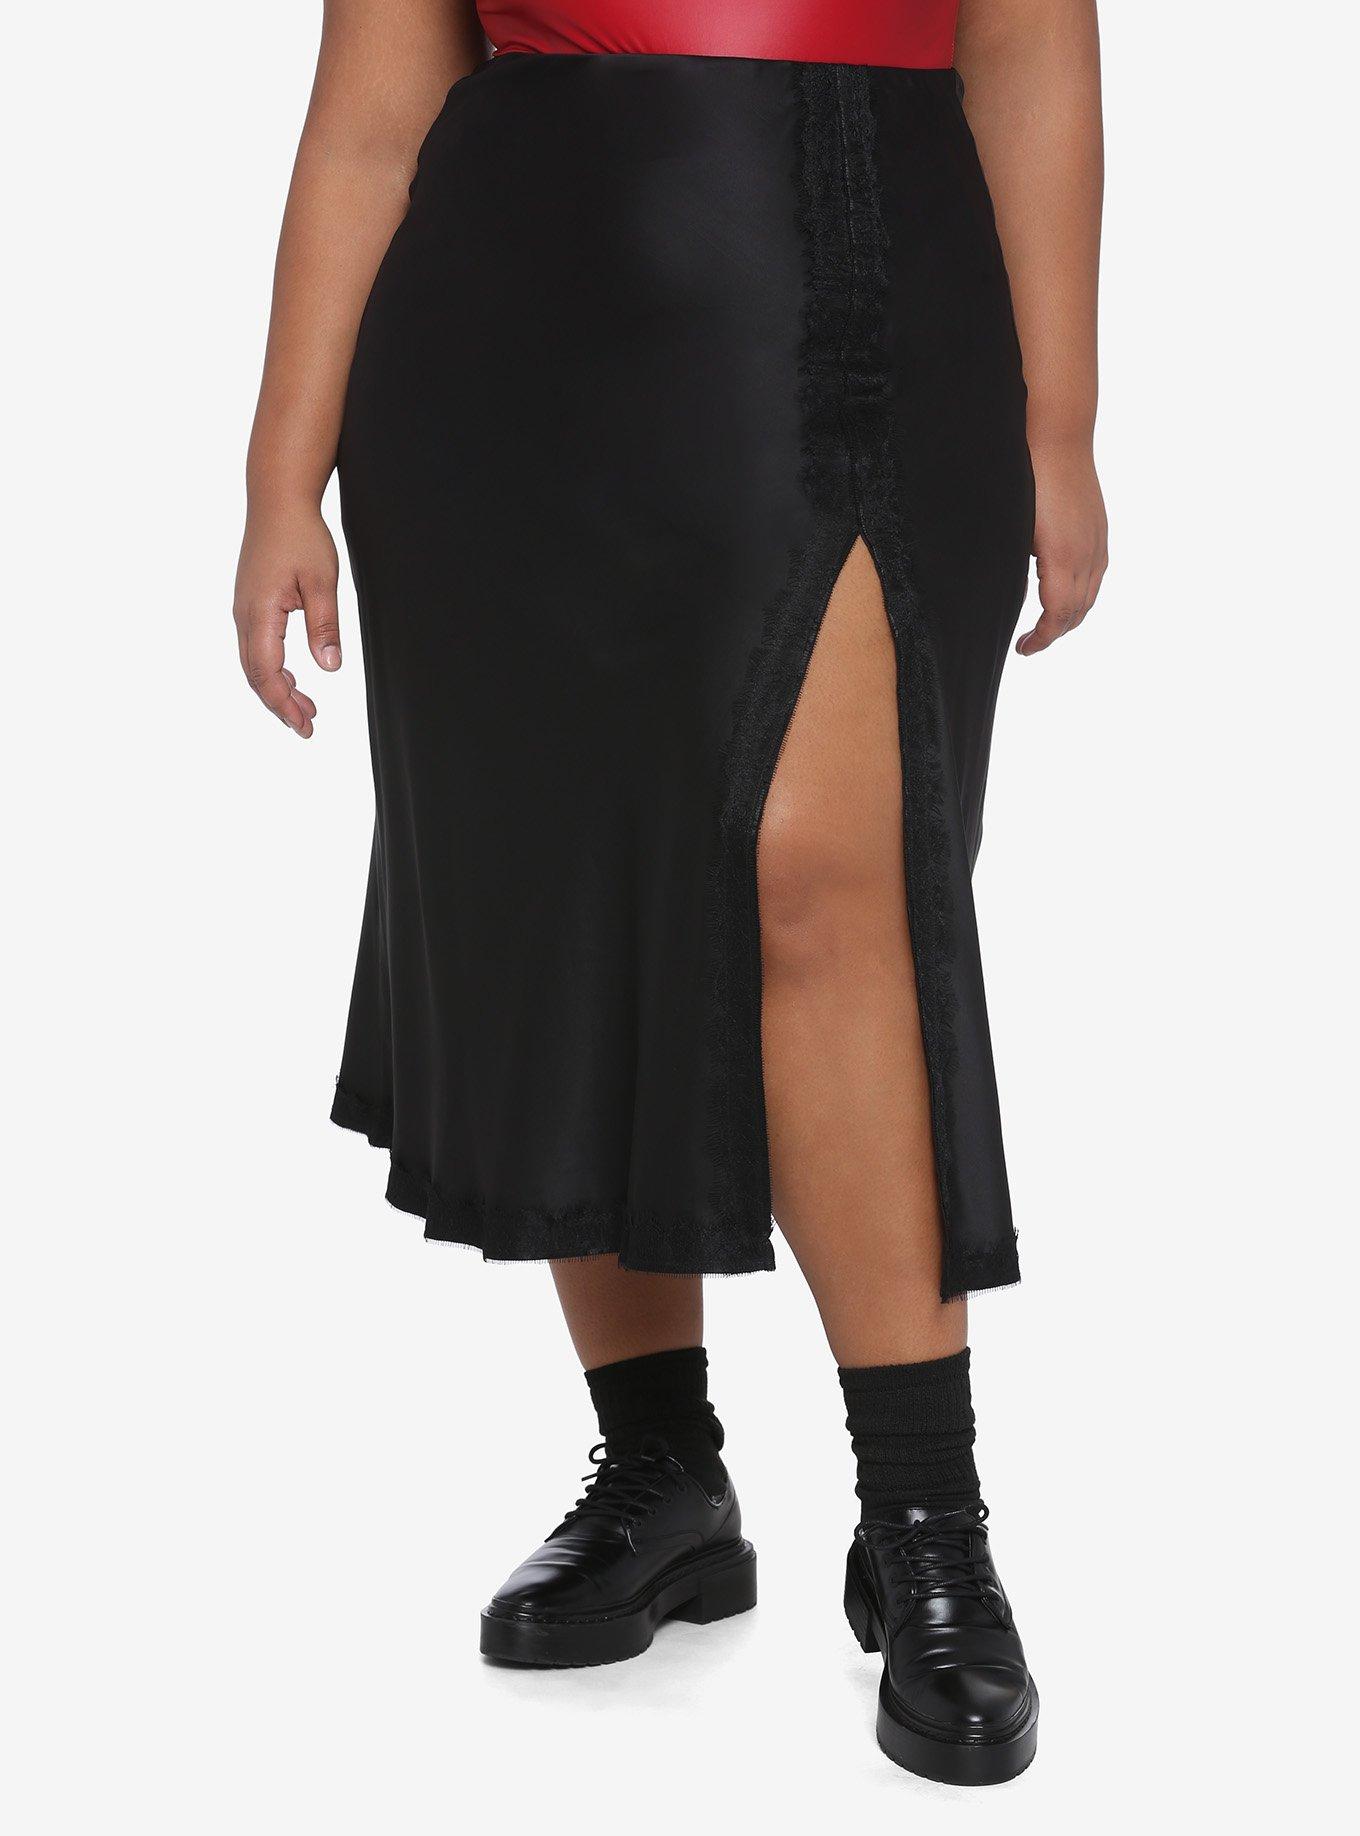 Black Satin Split Skirt Plus Size, BLACK, hi-res